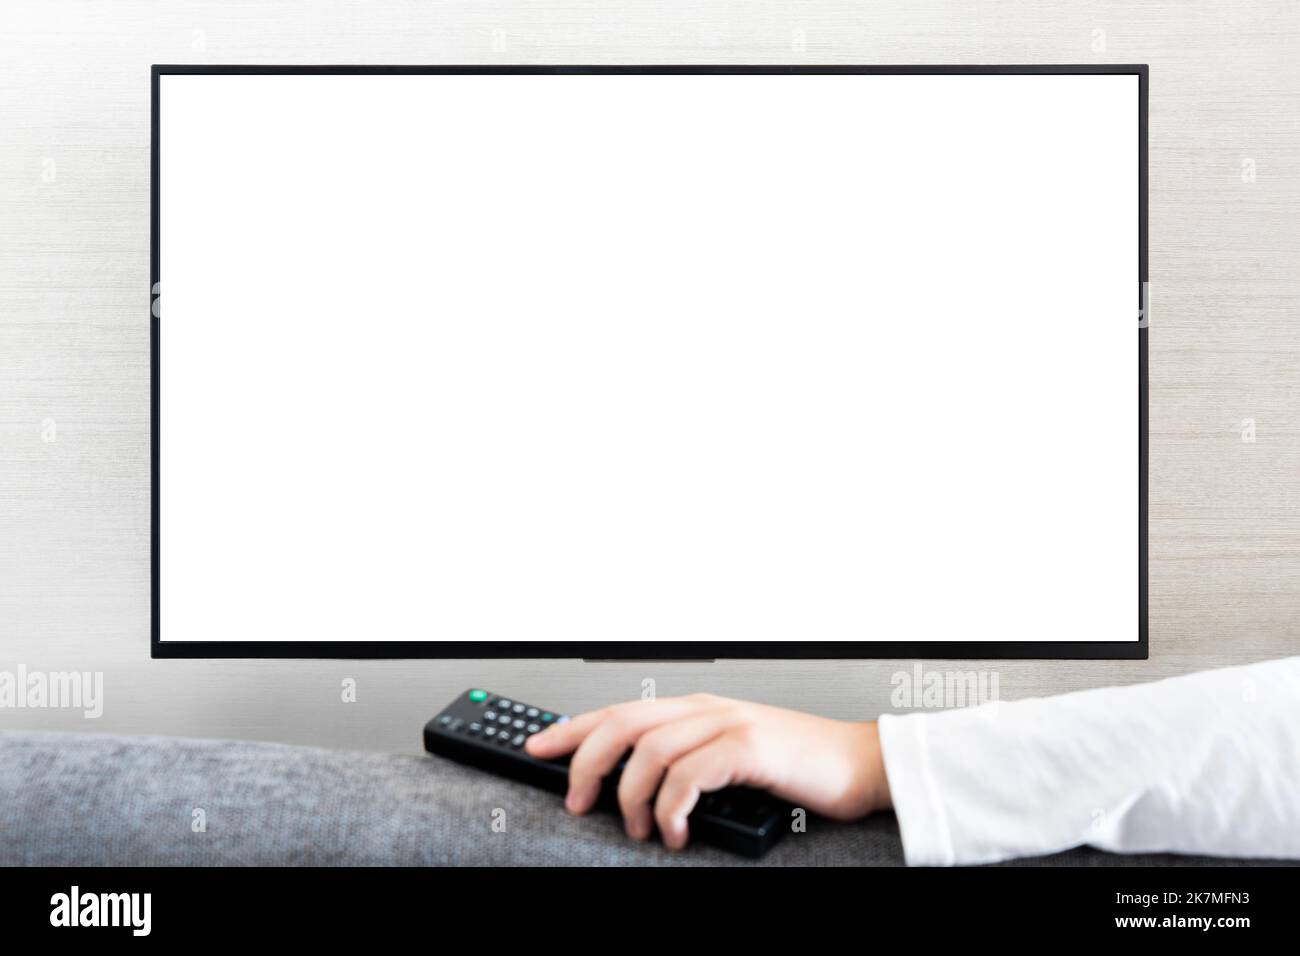 TV-Fernbedienung in männlicher Hand vor Breitbild-Fernseher mit leerem  Bildschirm auf weißem Wandhintergrund. Guy schaltet Kanäle auf der  Fernbedienung aus Stockfotografie - Alamy